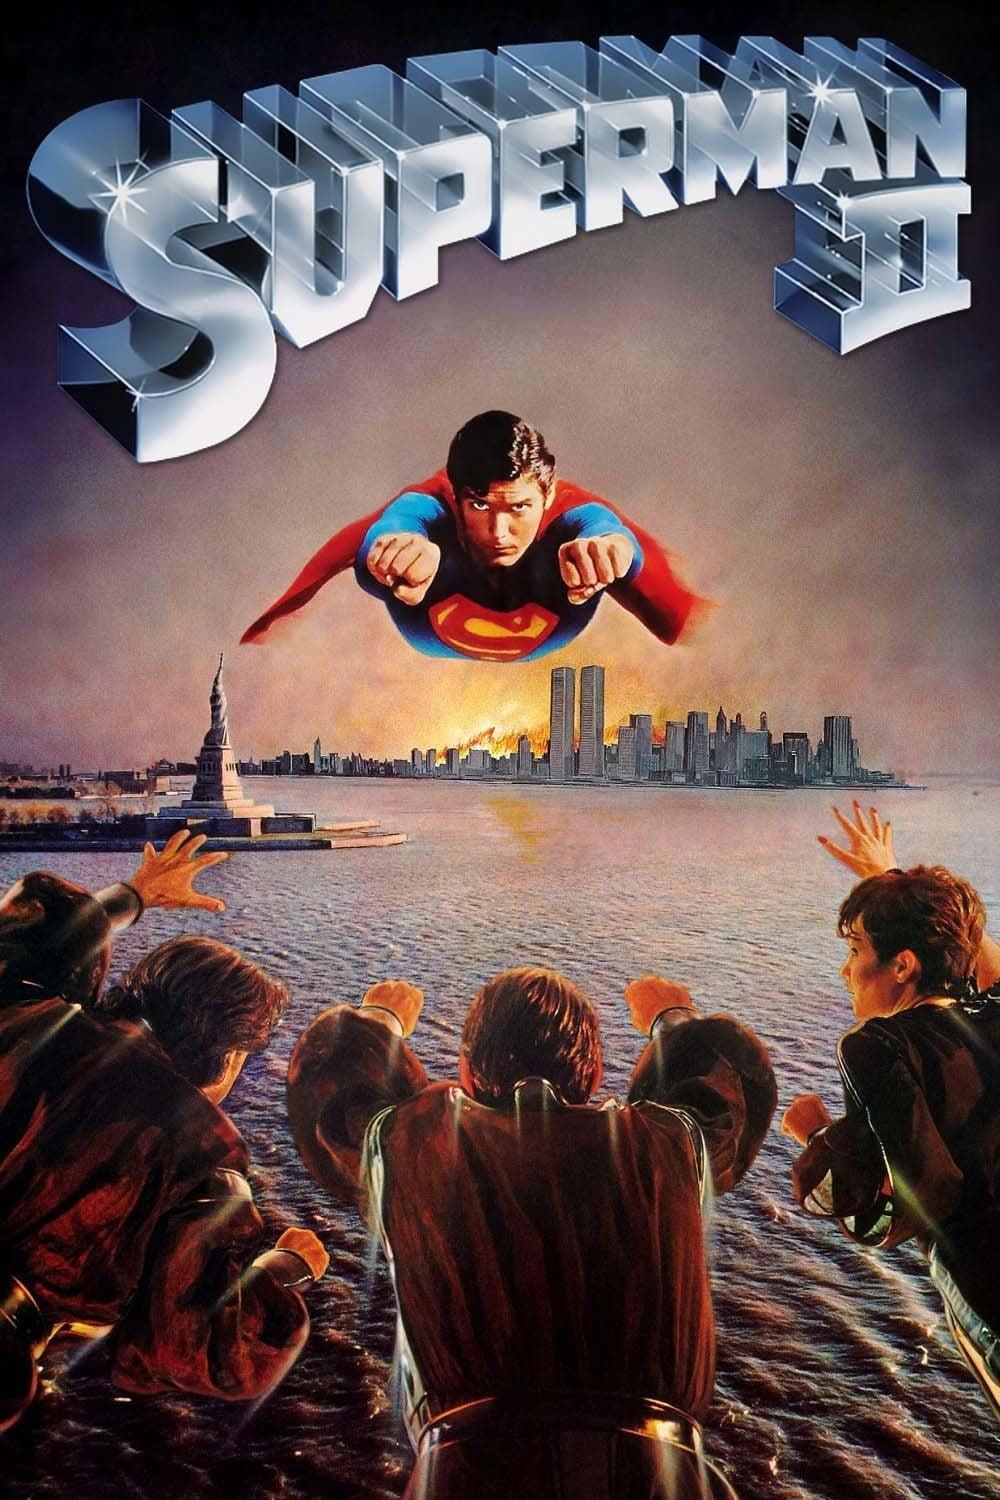 Superman II - Allein gegen alle poster